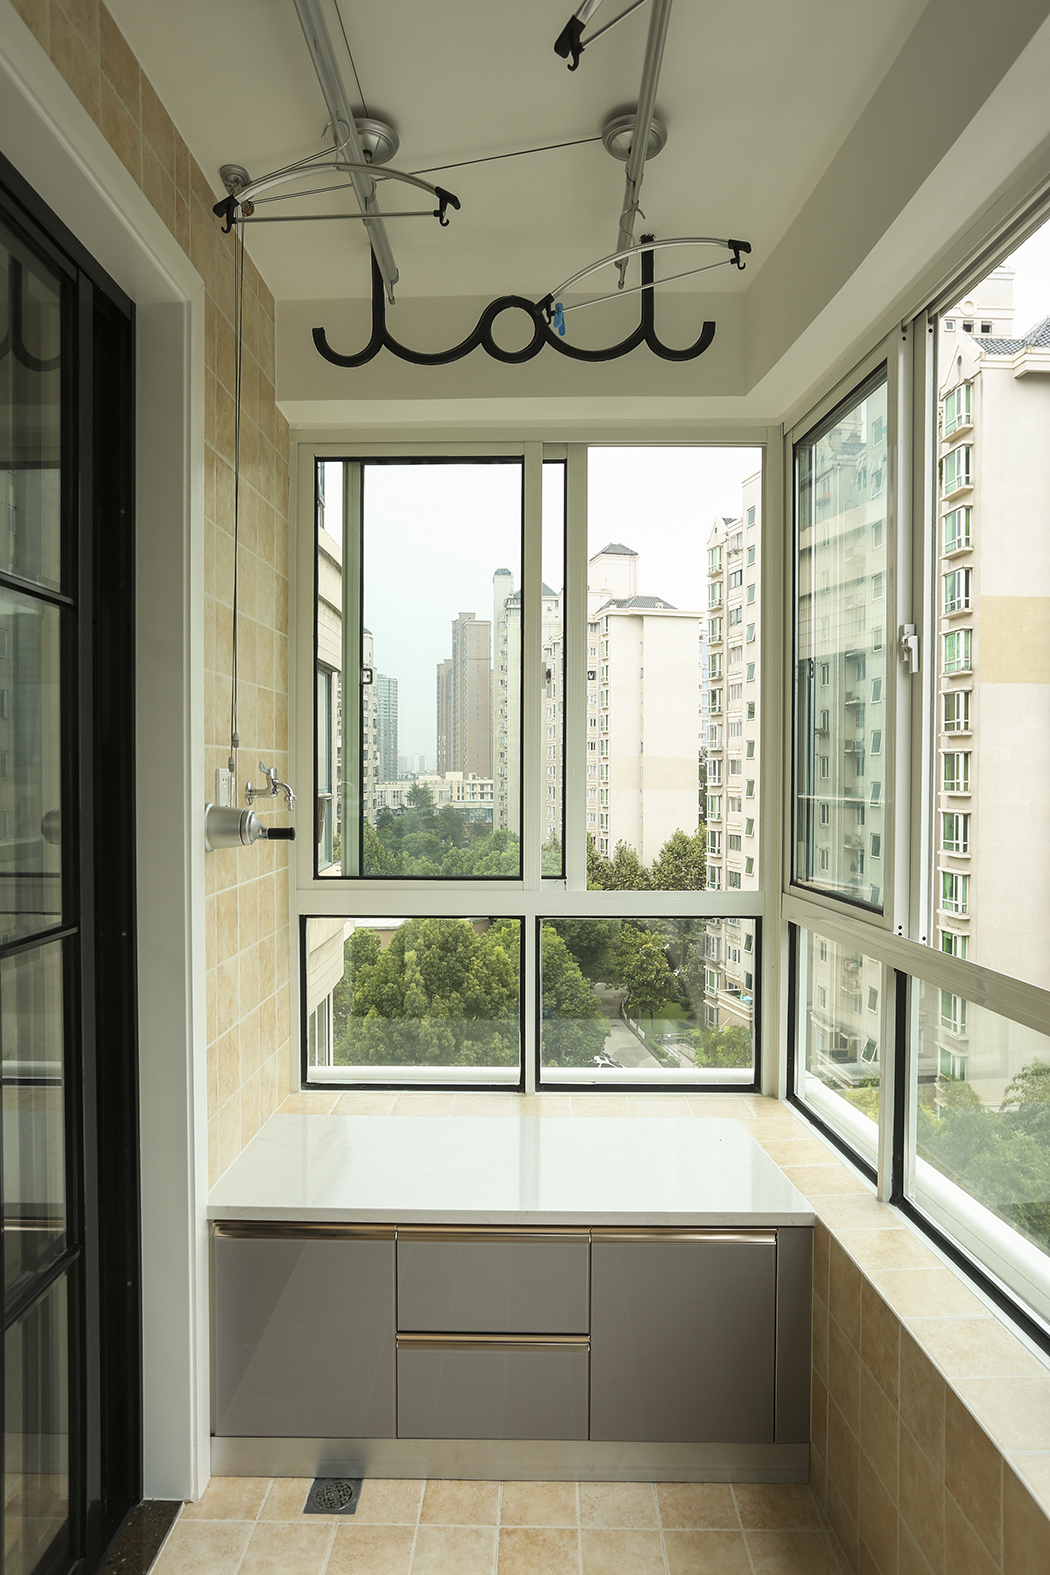 阳台的瓷砖选择了仿古亚光面的感觉，让阳台成为了一个休闲工作的空间，定制的洗衣机一体柜让空间摆放更加的合情合理。
